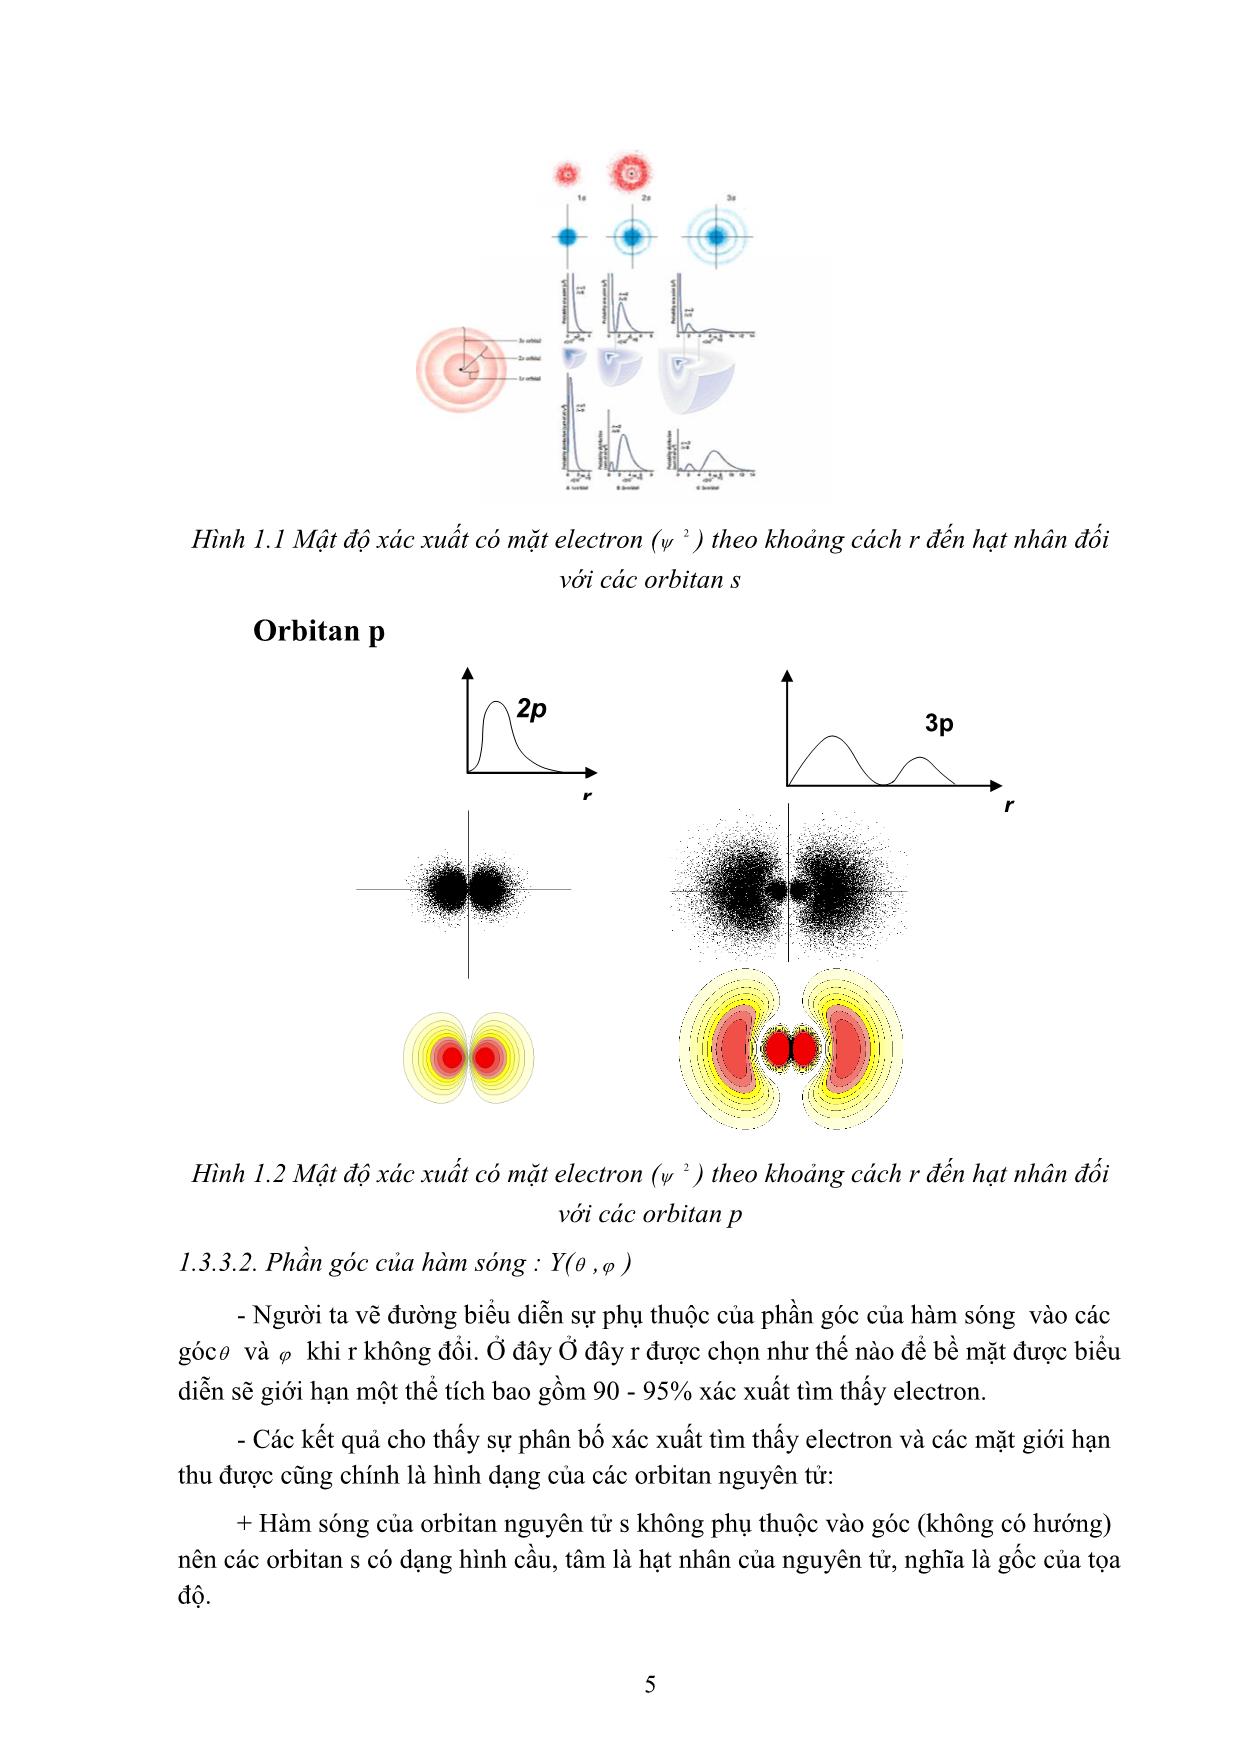 Bài giảng Hóa học đại cương A - Hoàng Hải Hậu (Phần 1) trang 10